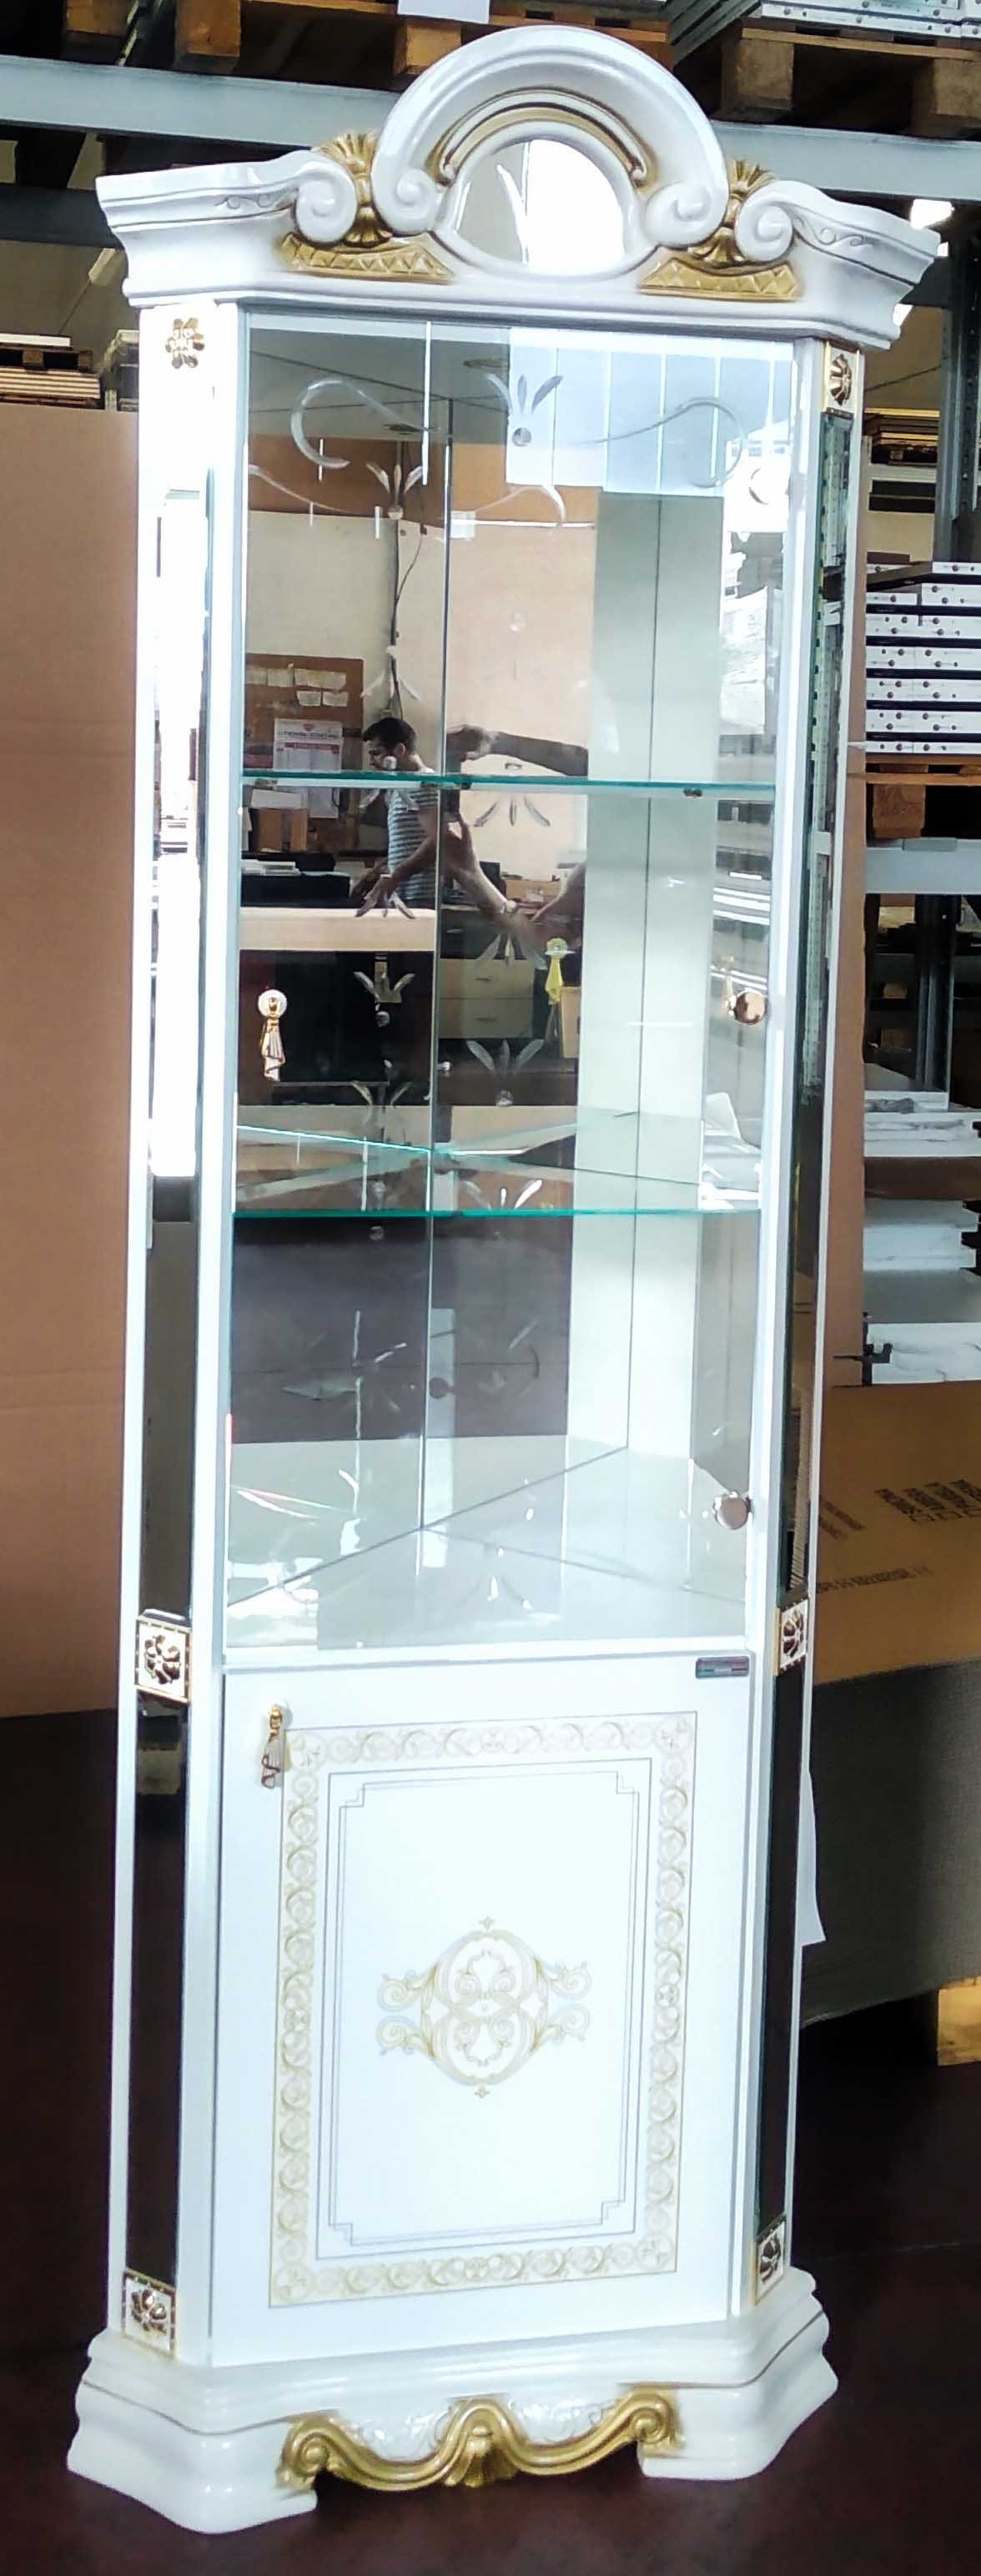 JVmoebel Vitrine Luxus Schaufenster Eckvitrine Glas Schrank Modern Möbel Klassisch Made in Italy